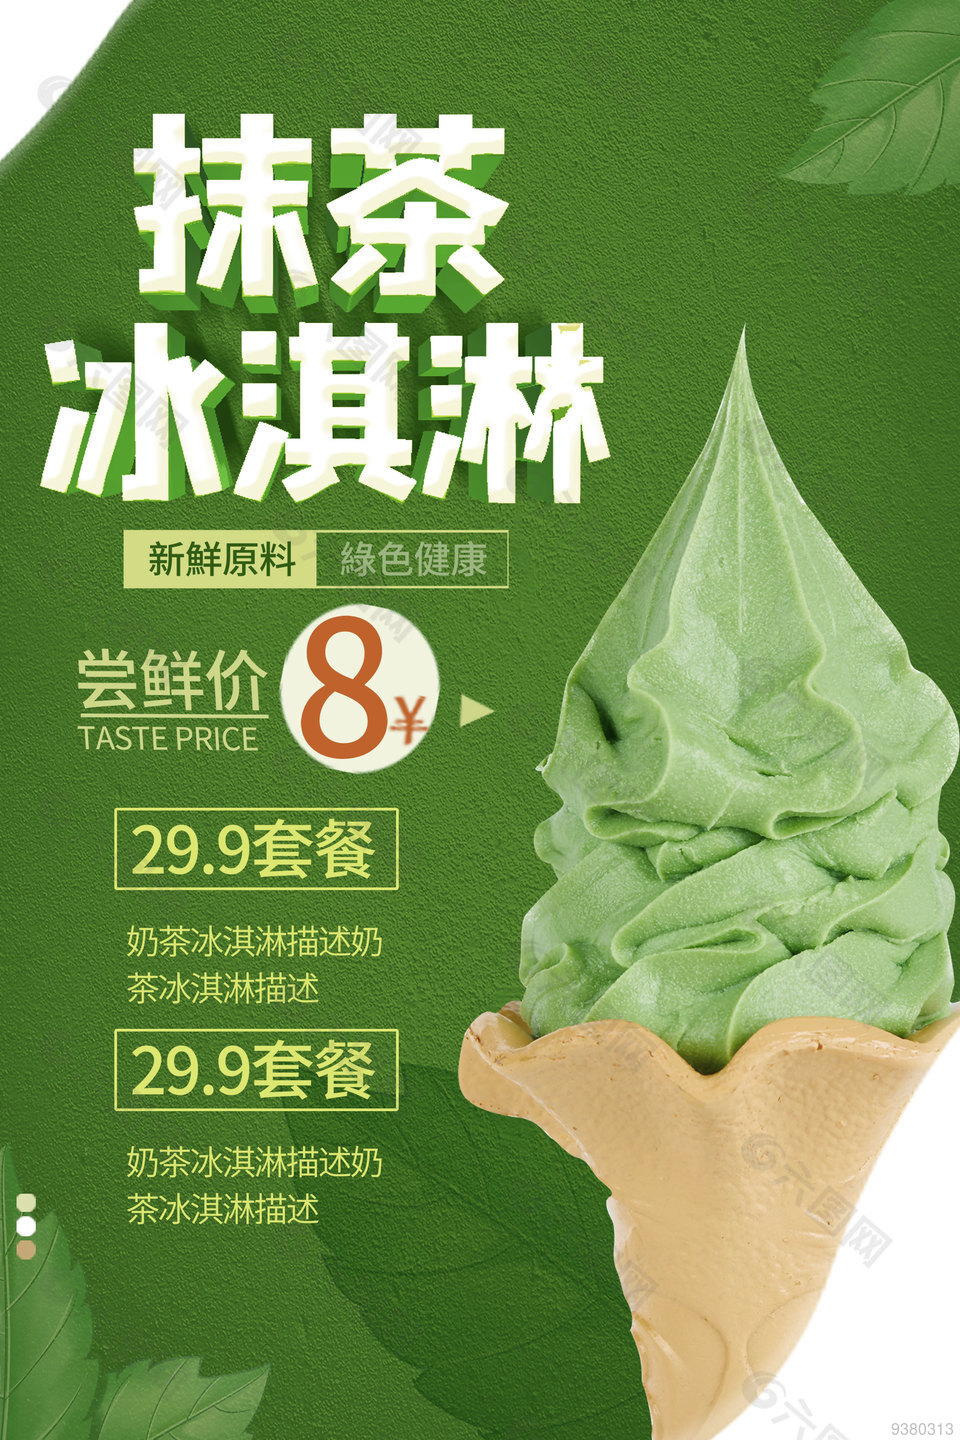 抹茶冰淇淋促销海报设计